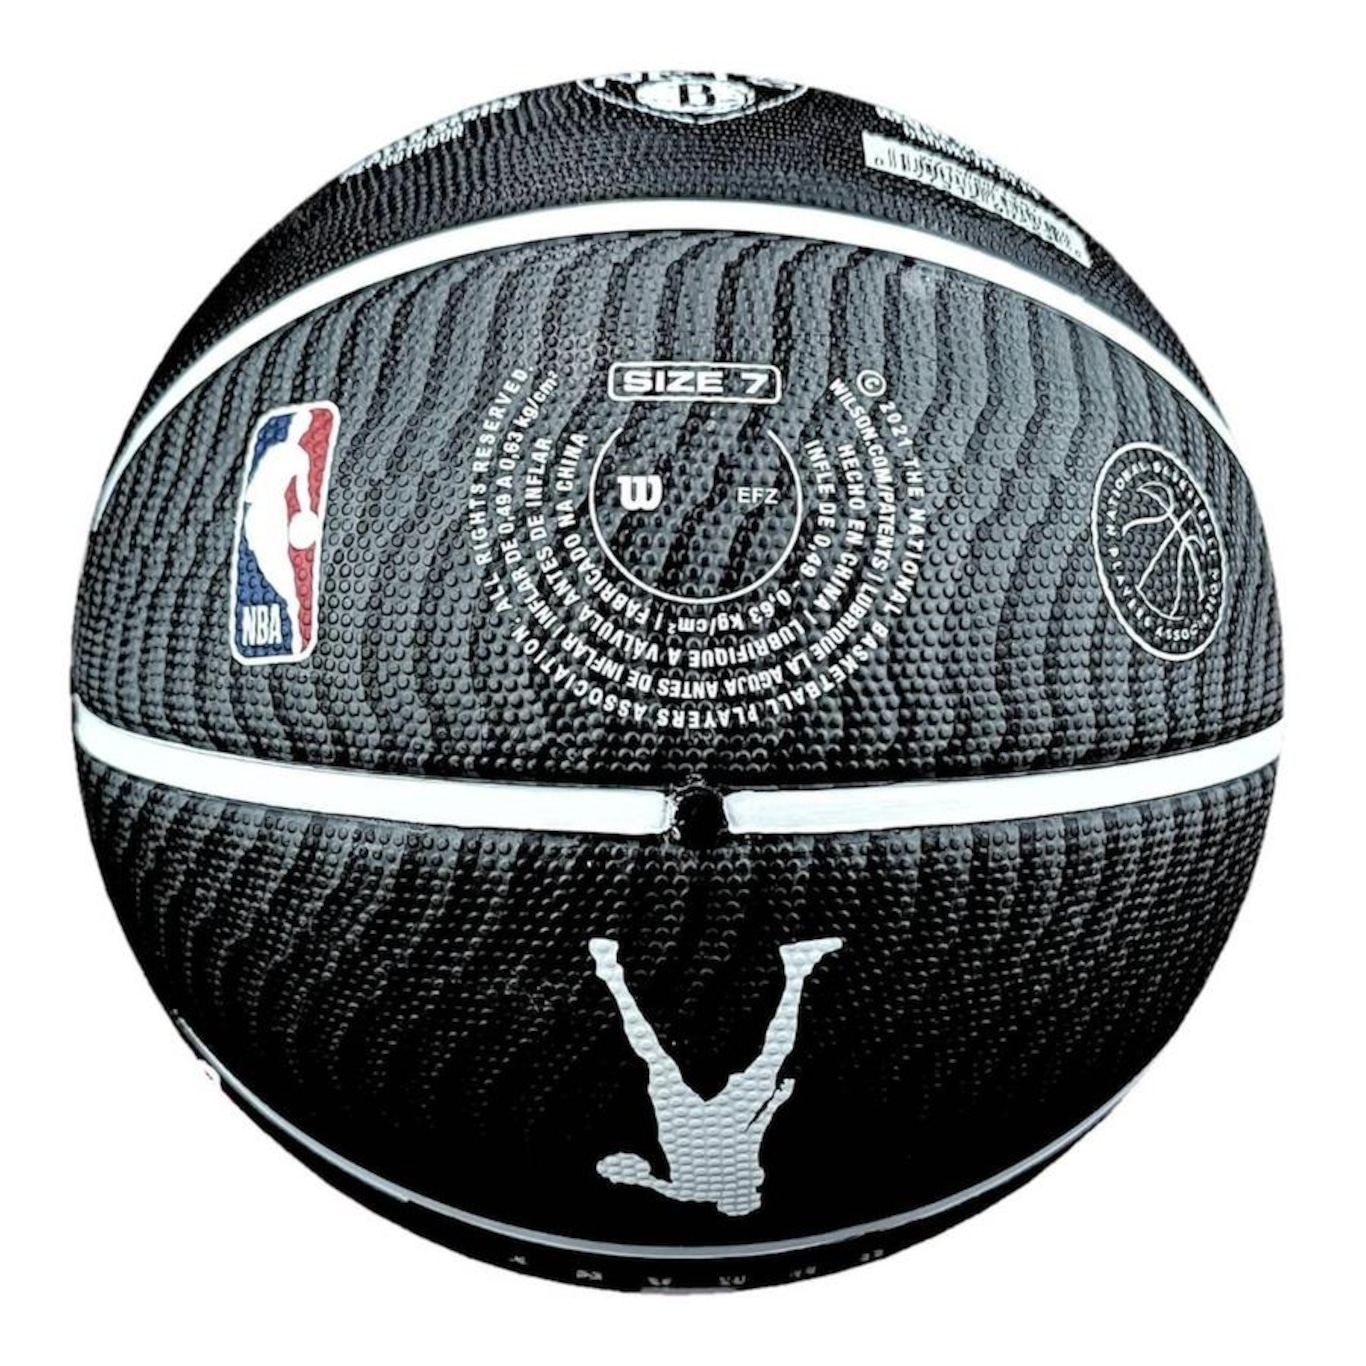 Bola de Basquete NBA Spalding Profissional AllStar Oficial - Bola